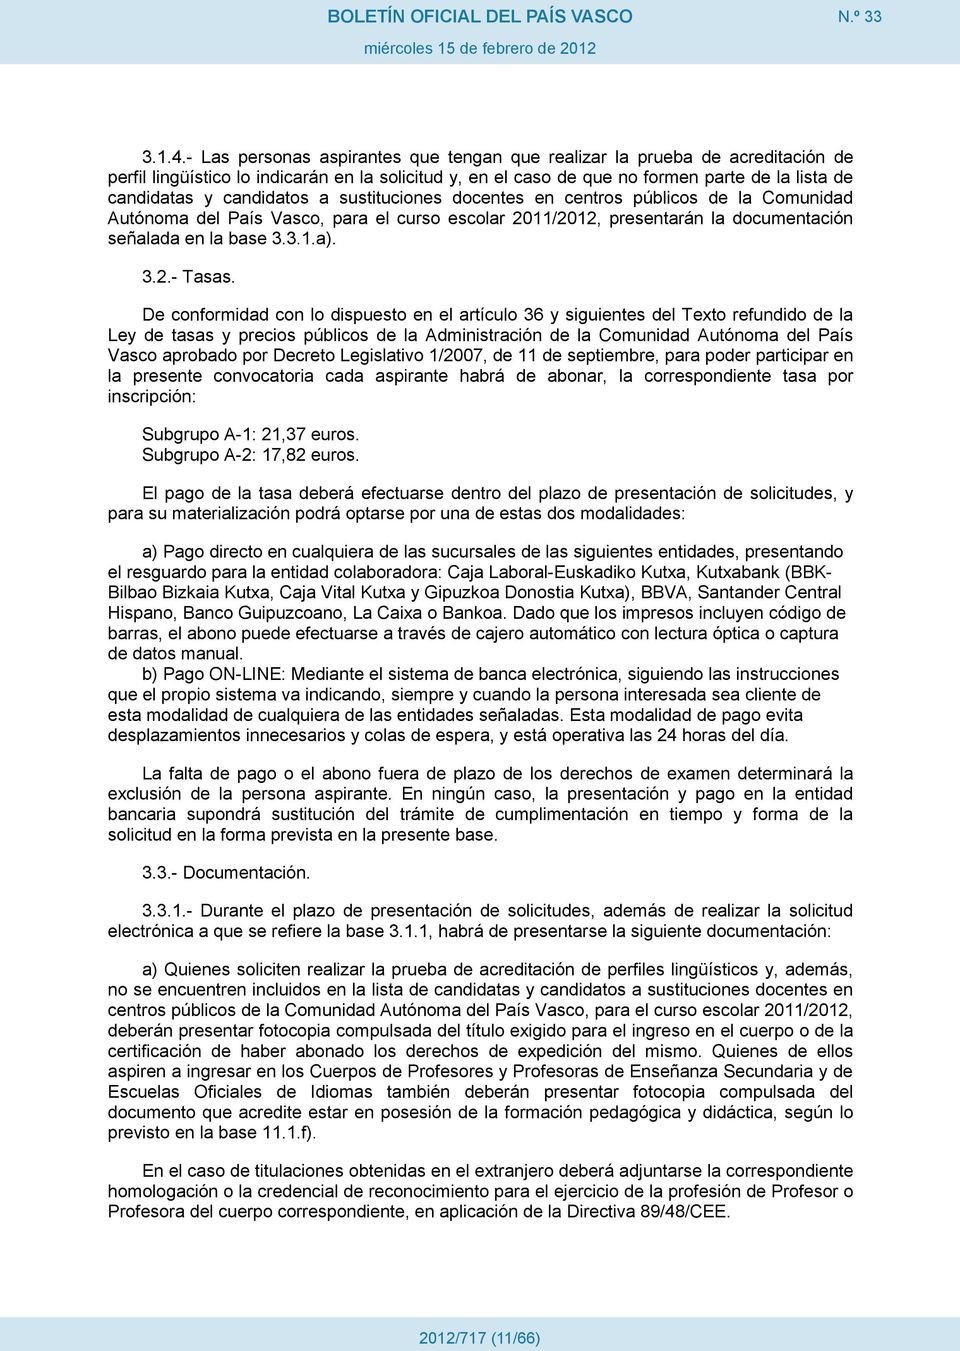 candidatos a sustituciones docentes en centros públicos de la Comunidad Autónoma del País Vasco, para el curso escolar 2011/2012, presentarán la documentación señalada en la base 3.3.1.a). 3.2.- Tasas.